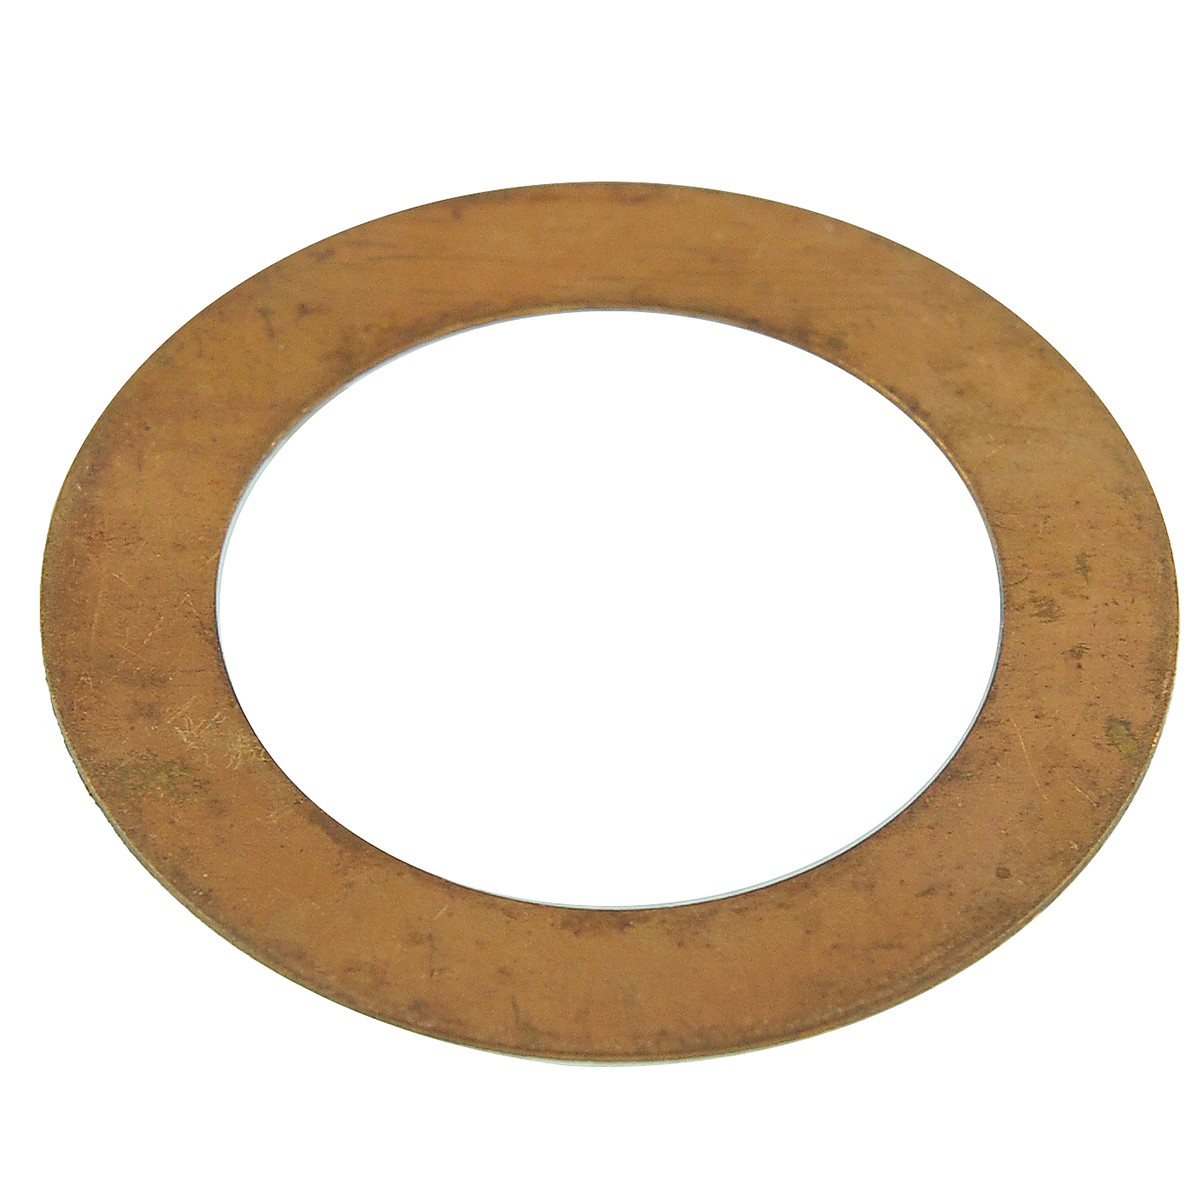 Arandela de cobre / 45 x 65 mm / Iseki TS2510 / 1656-304-003-00 / 9-26-107-02